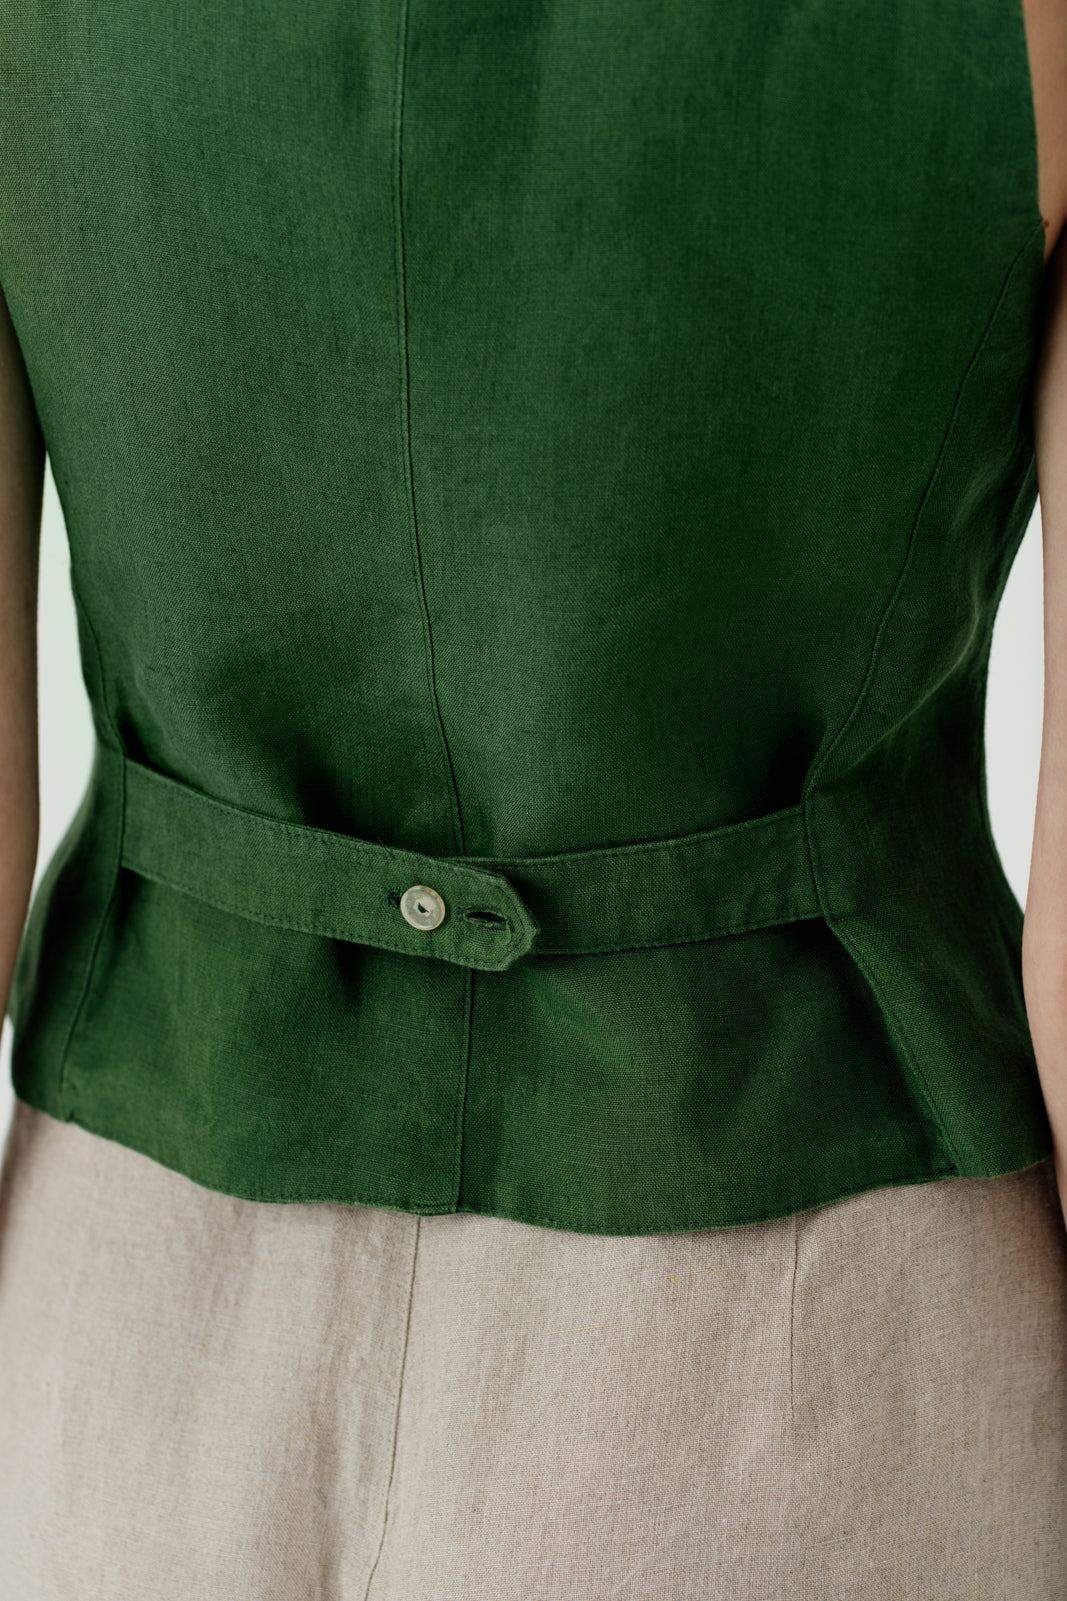 Classic Vest, Emerald Green